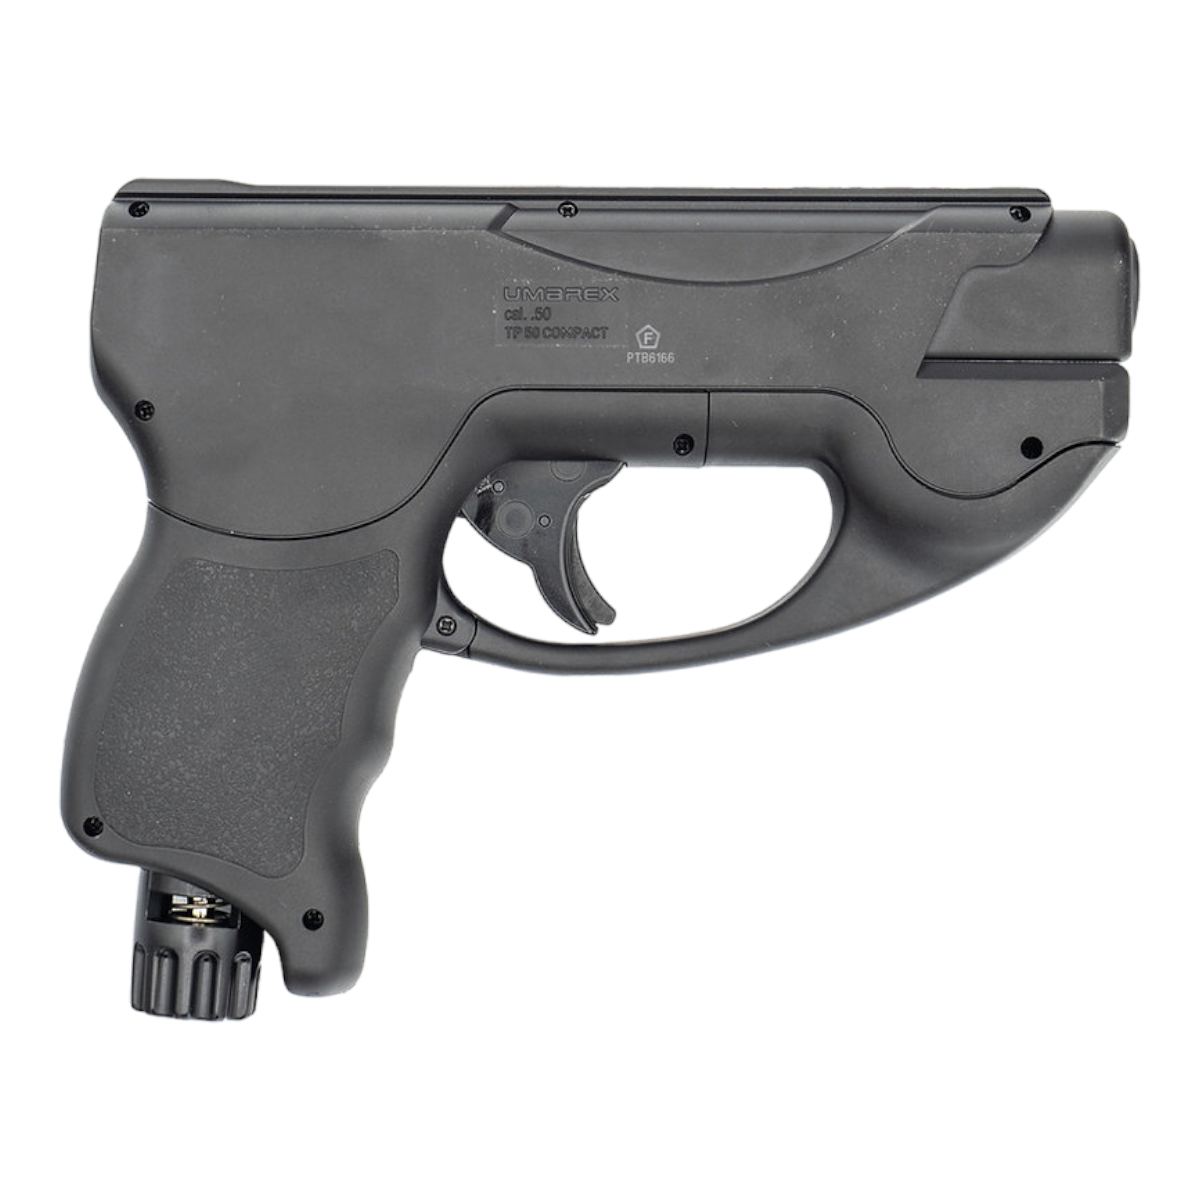 Pistola traumatica Umarex TP50 Compact calibre 50 PTC1